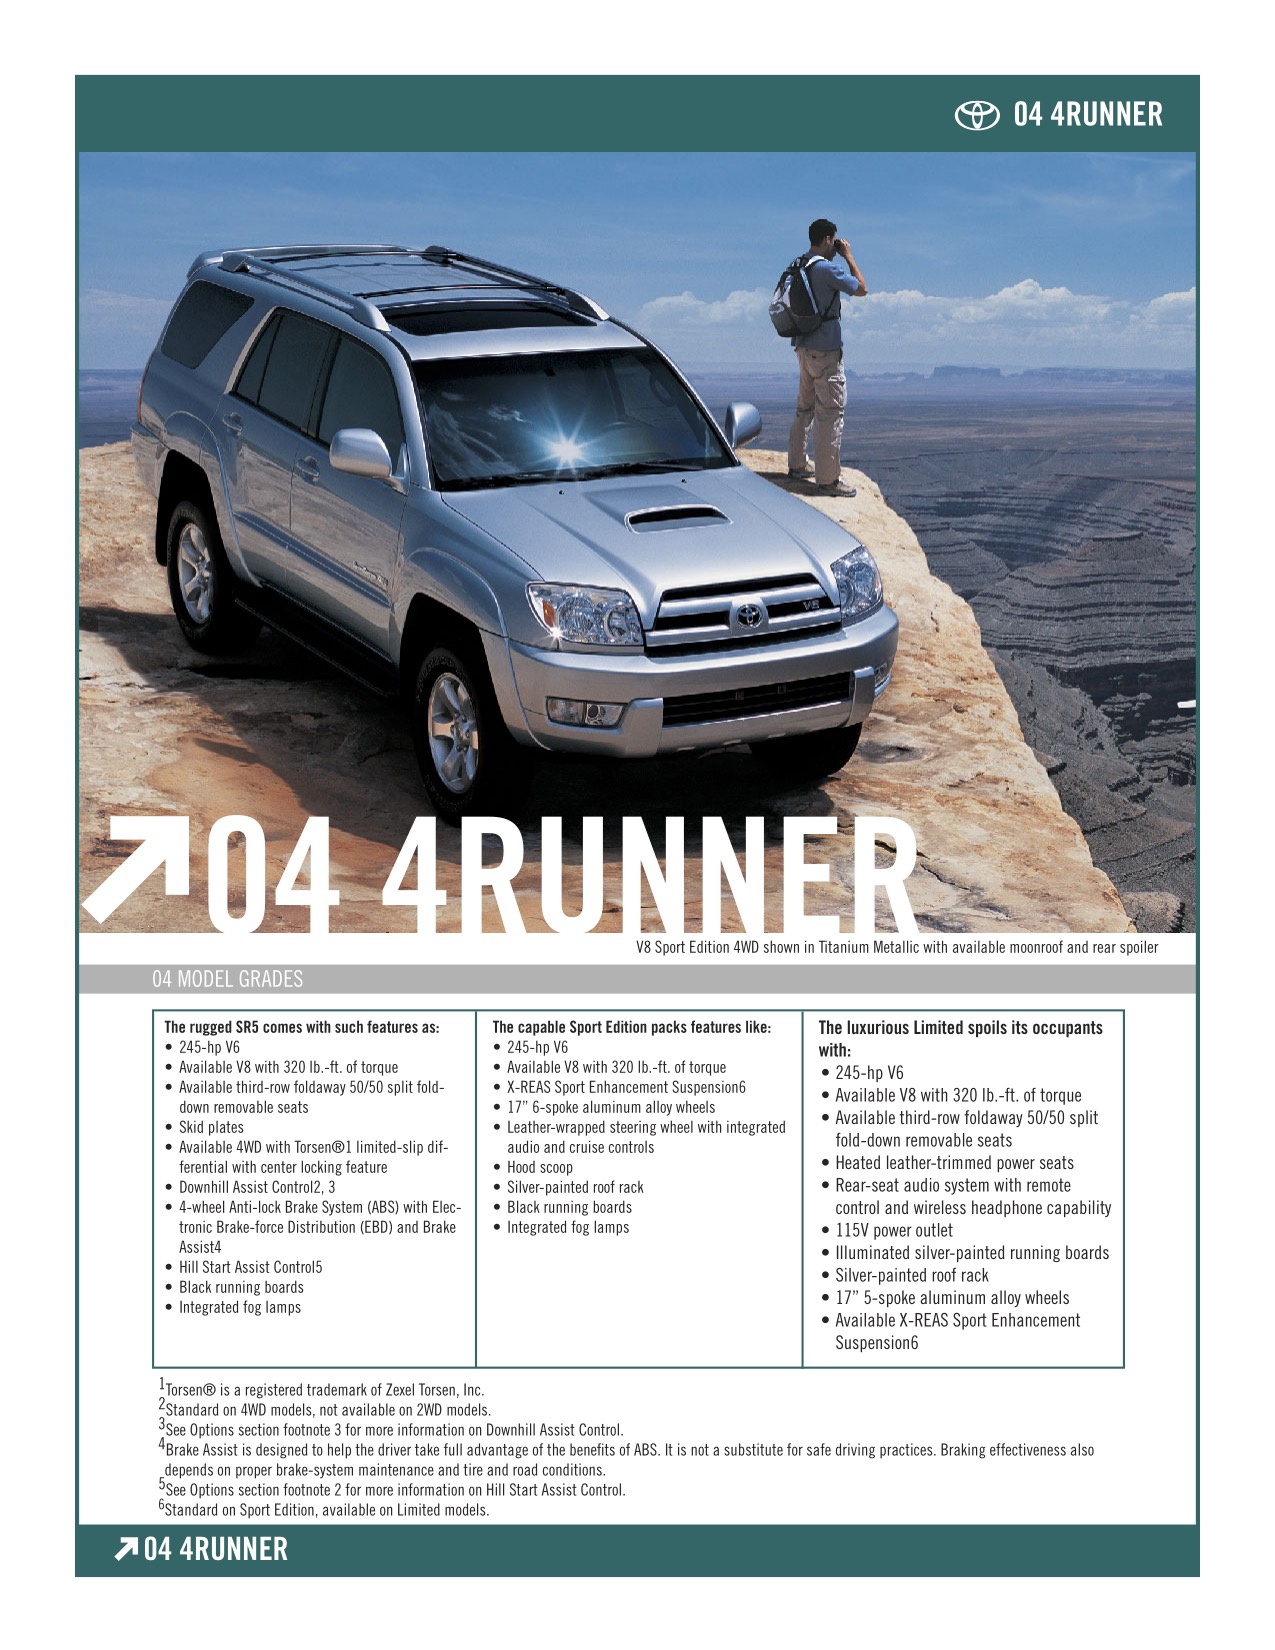 2004 Toyota 4Runner Brochure